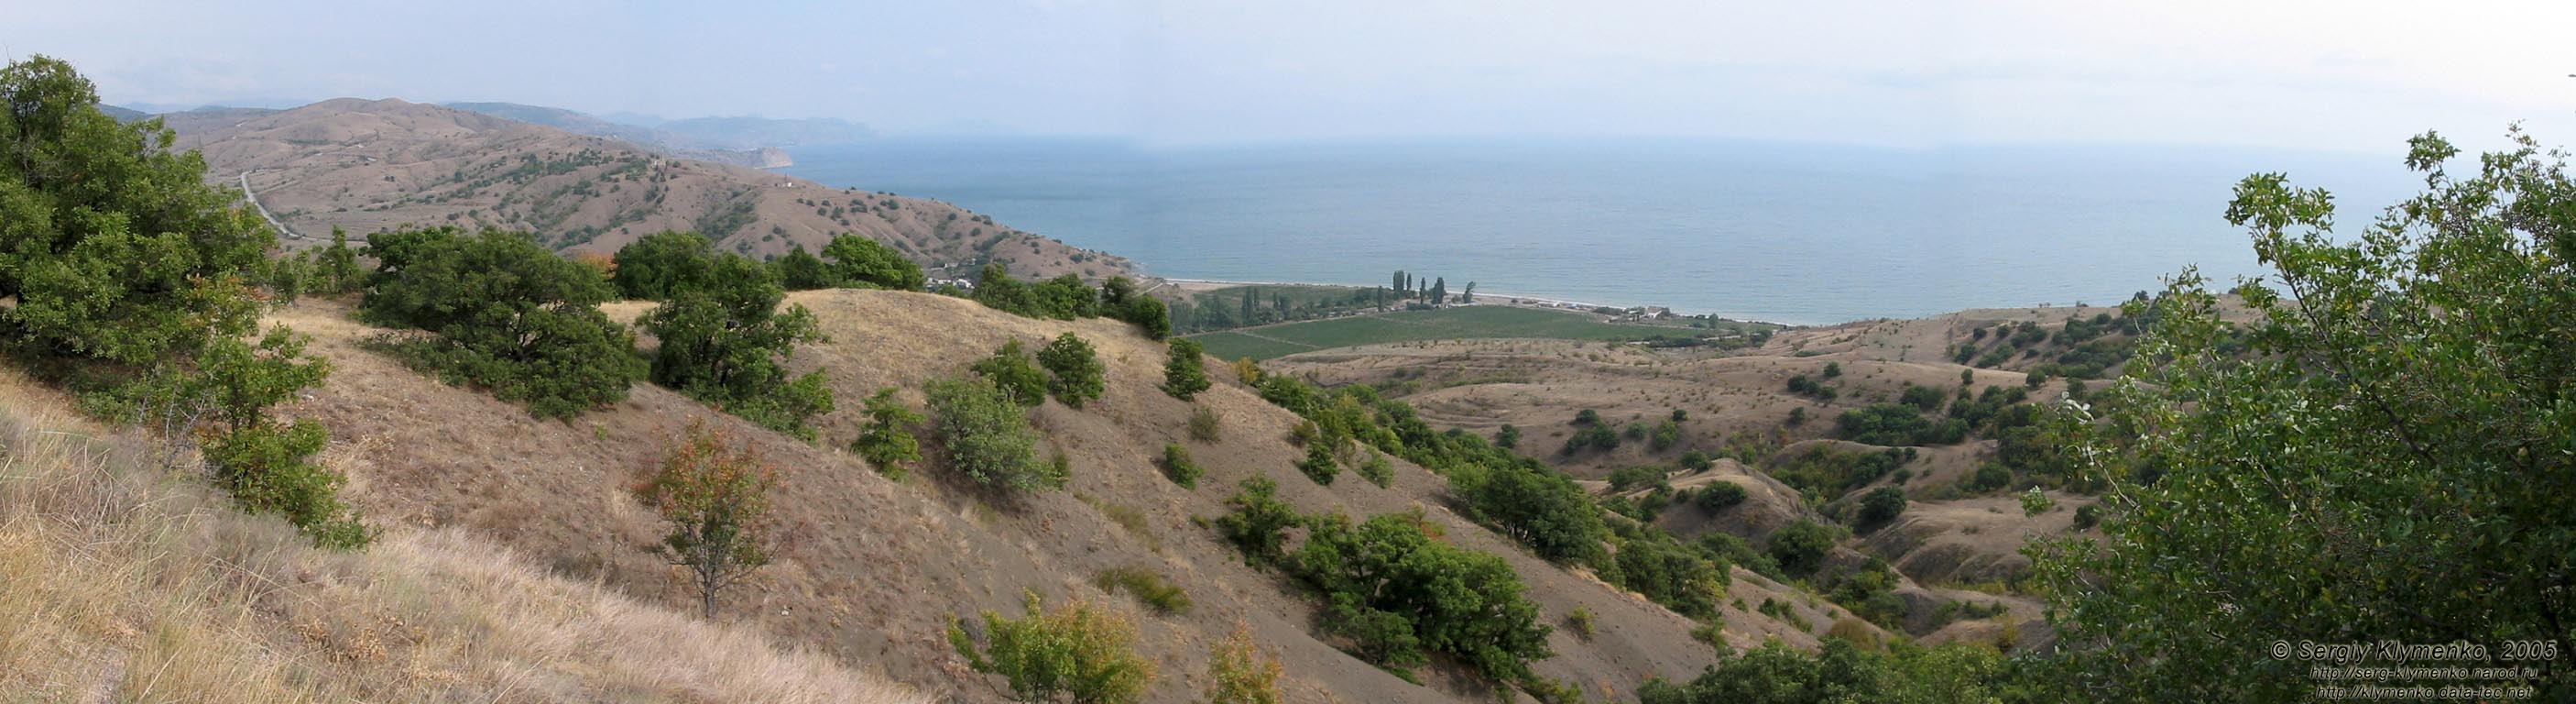 Крым. По дороге от Алушты на Судак. Вид на горы и море с перевала где-то вблизи села Приветное.